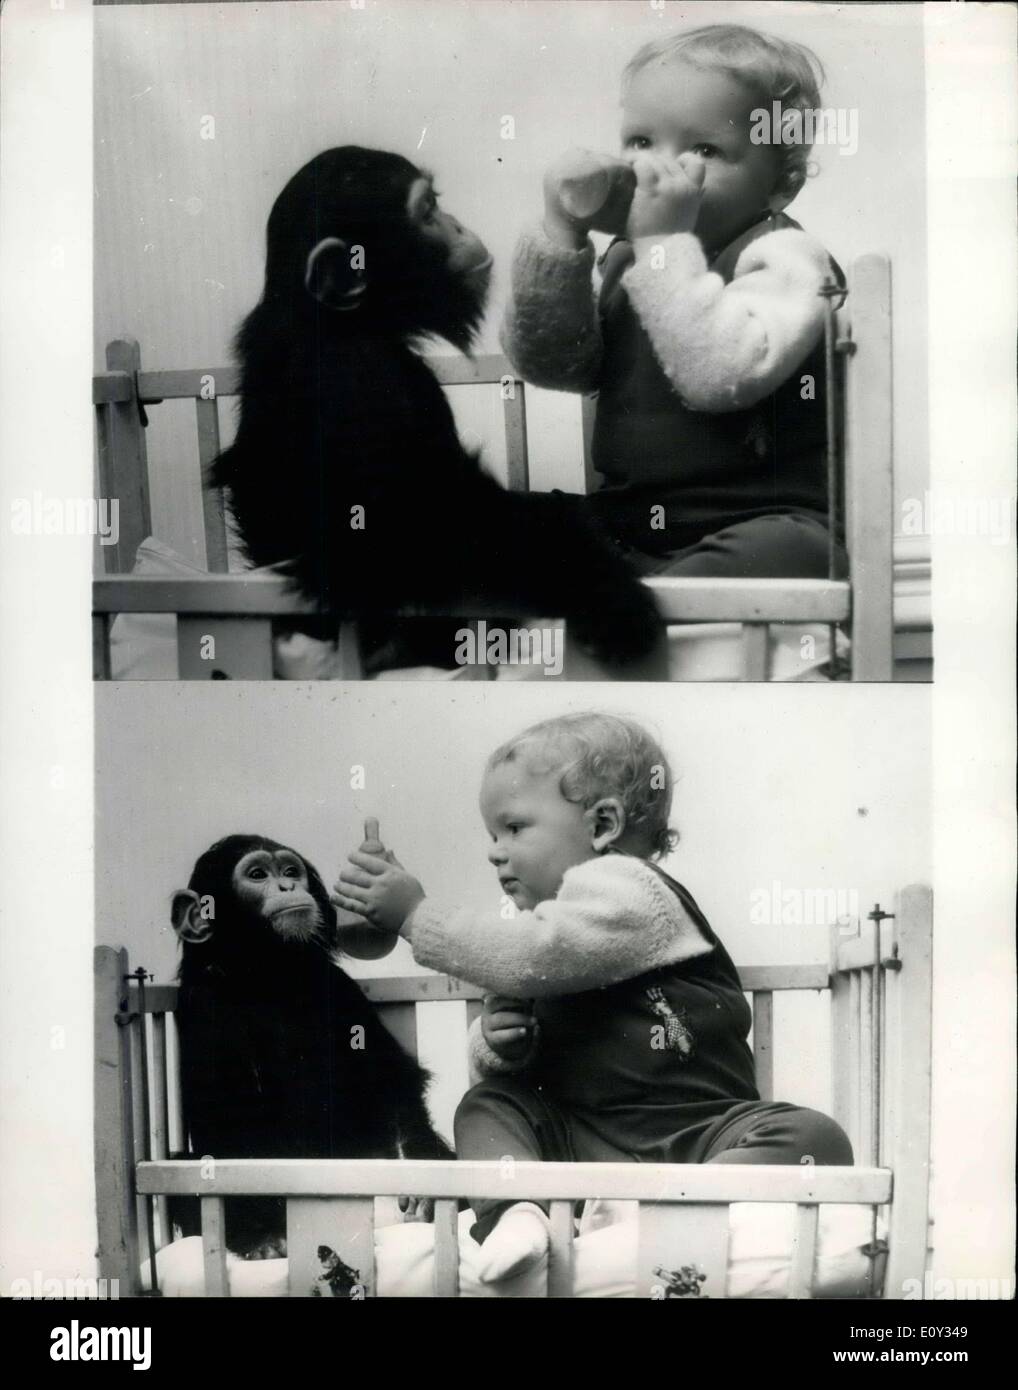 28. Juni 1968 - Rl und baby-ChimpNow die Your Turn für die Flasche. vor 14 Monaten war ein besonderer Anlass im Twycross Zoo, Leicestershire, denn es war eine doppelte Geburt. Eines der weiblichen Schimpansen im Zoo gebar eine Tochter. Um gebar etwa zur gleichen Zeit, Mrs. Robinson, der Zoo Päsidenten, ihr Sohn Neil. Seit dieser denkwürdigen Gelegenheit Mrs. Robinson beide Babys zusammen gebracht hat, behandeln sie beide gleichermaßen. So viel in der Tat Judym Schimpanse und junge Neil Essen, schlafen und spielen zusammen, wie Bruder und Schwester Stockfoto